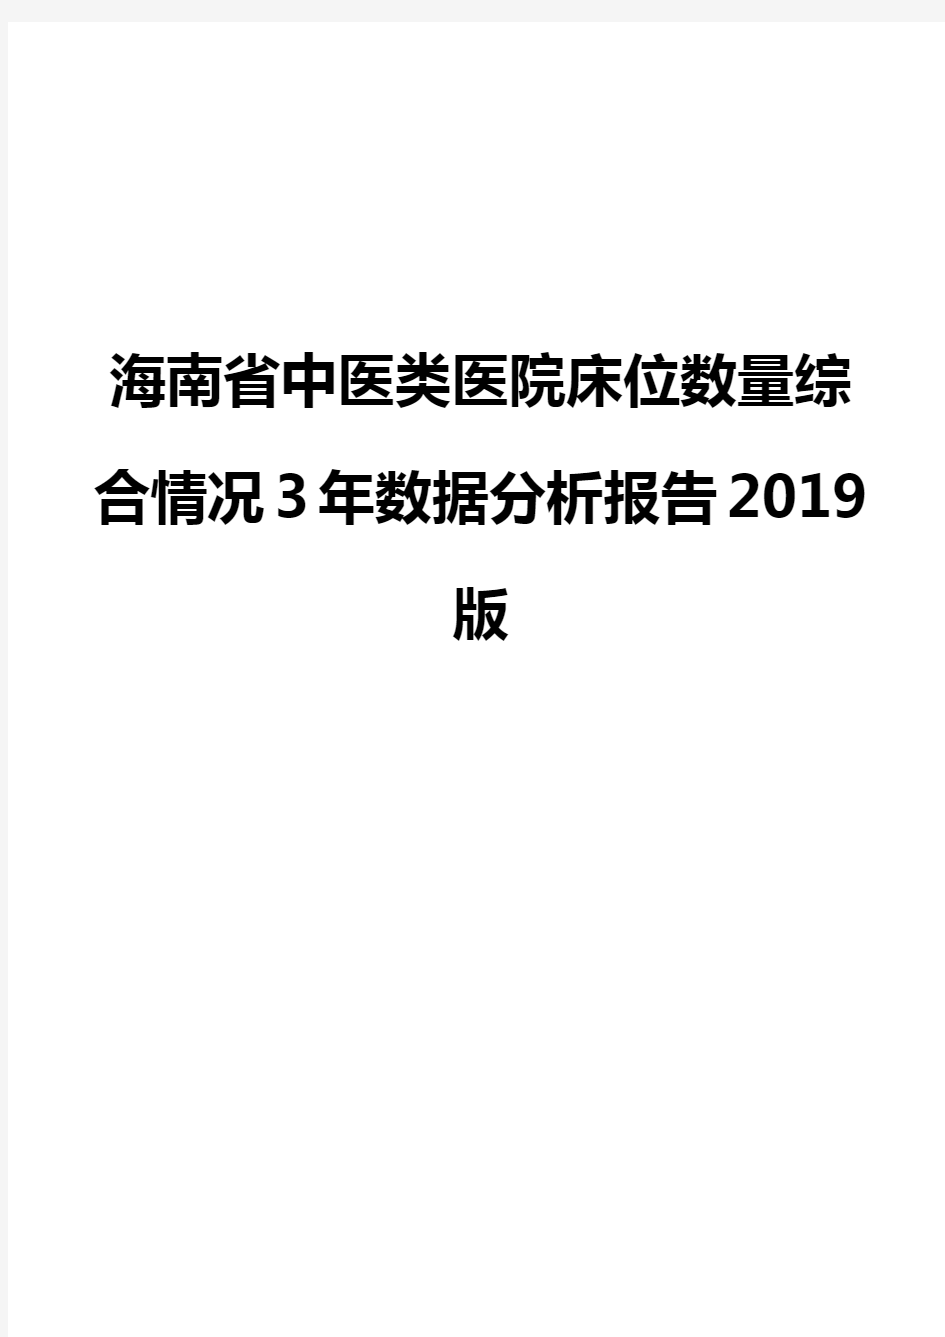 海南省中医类医院床位数量综合情况3年数据分析报告2019版